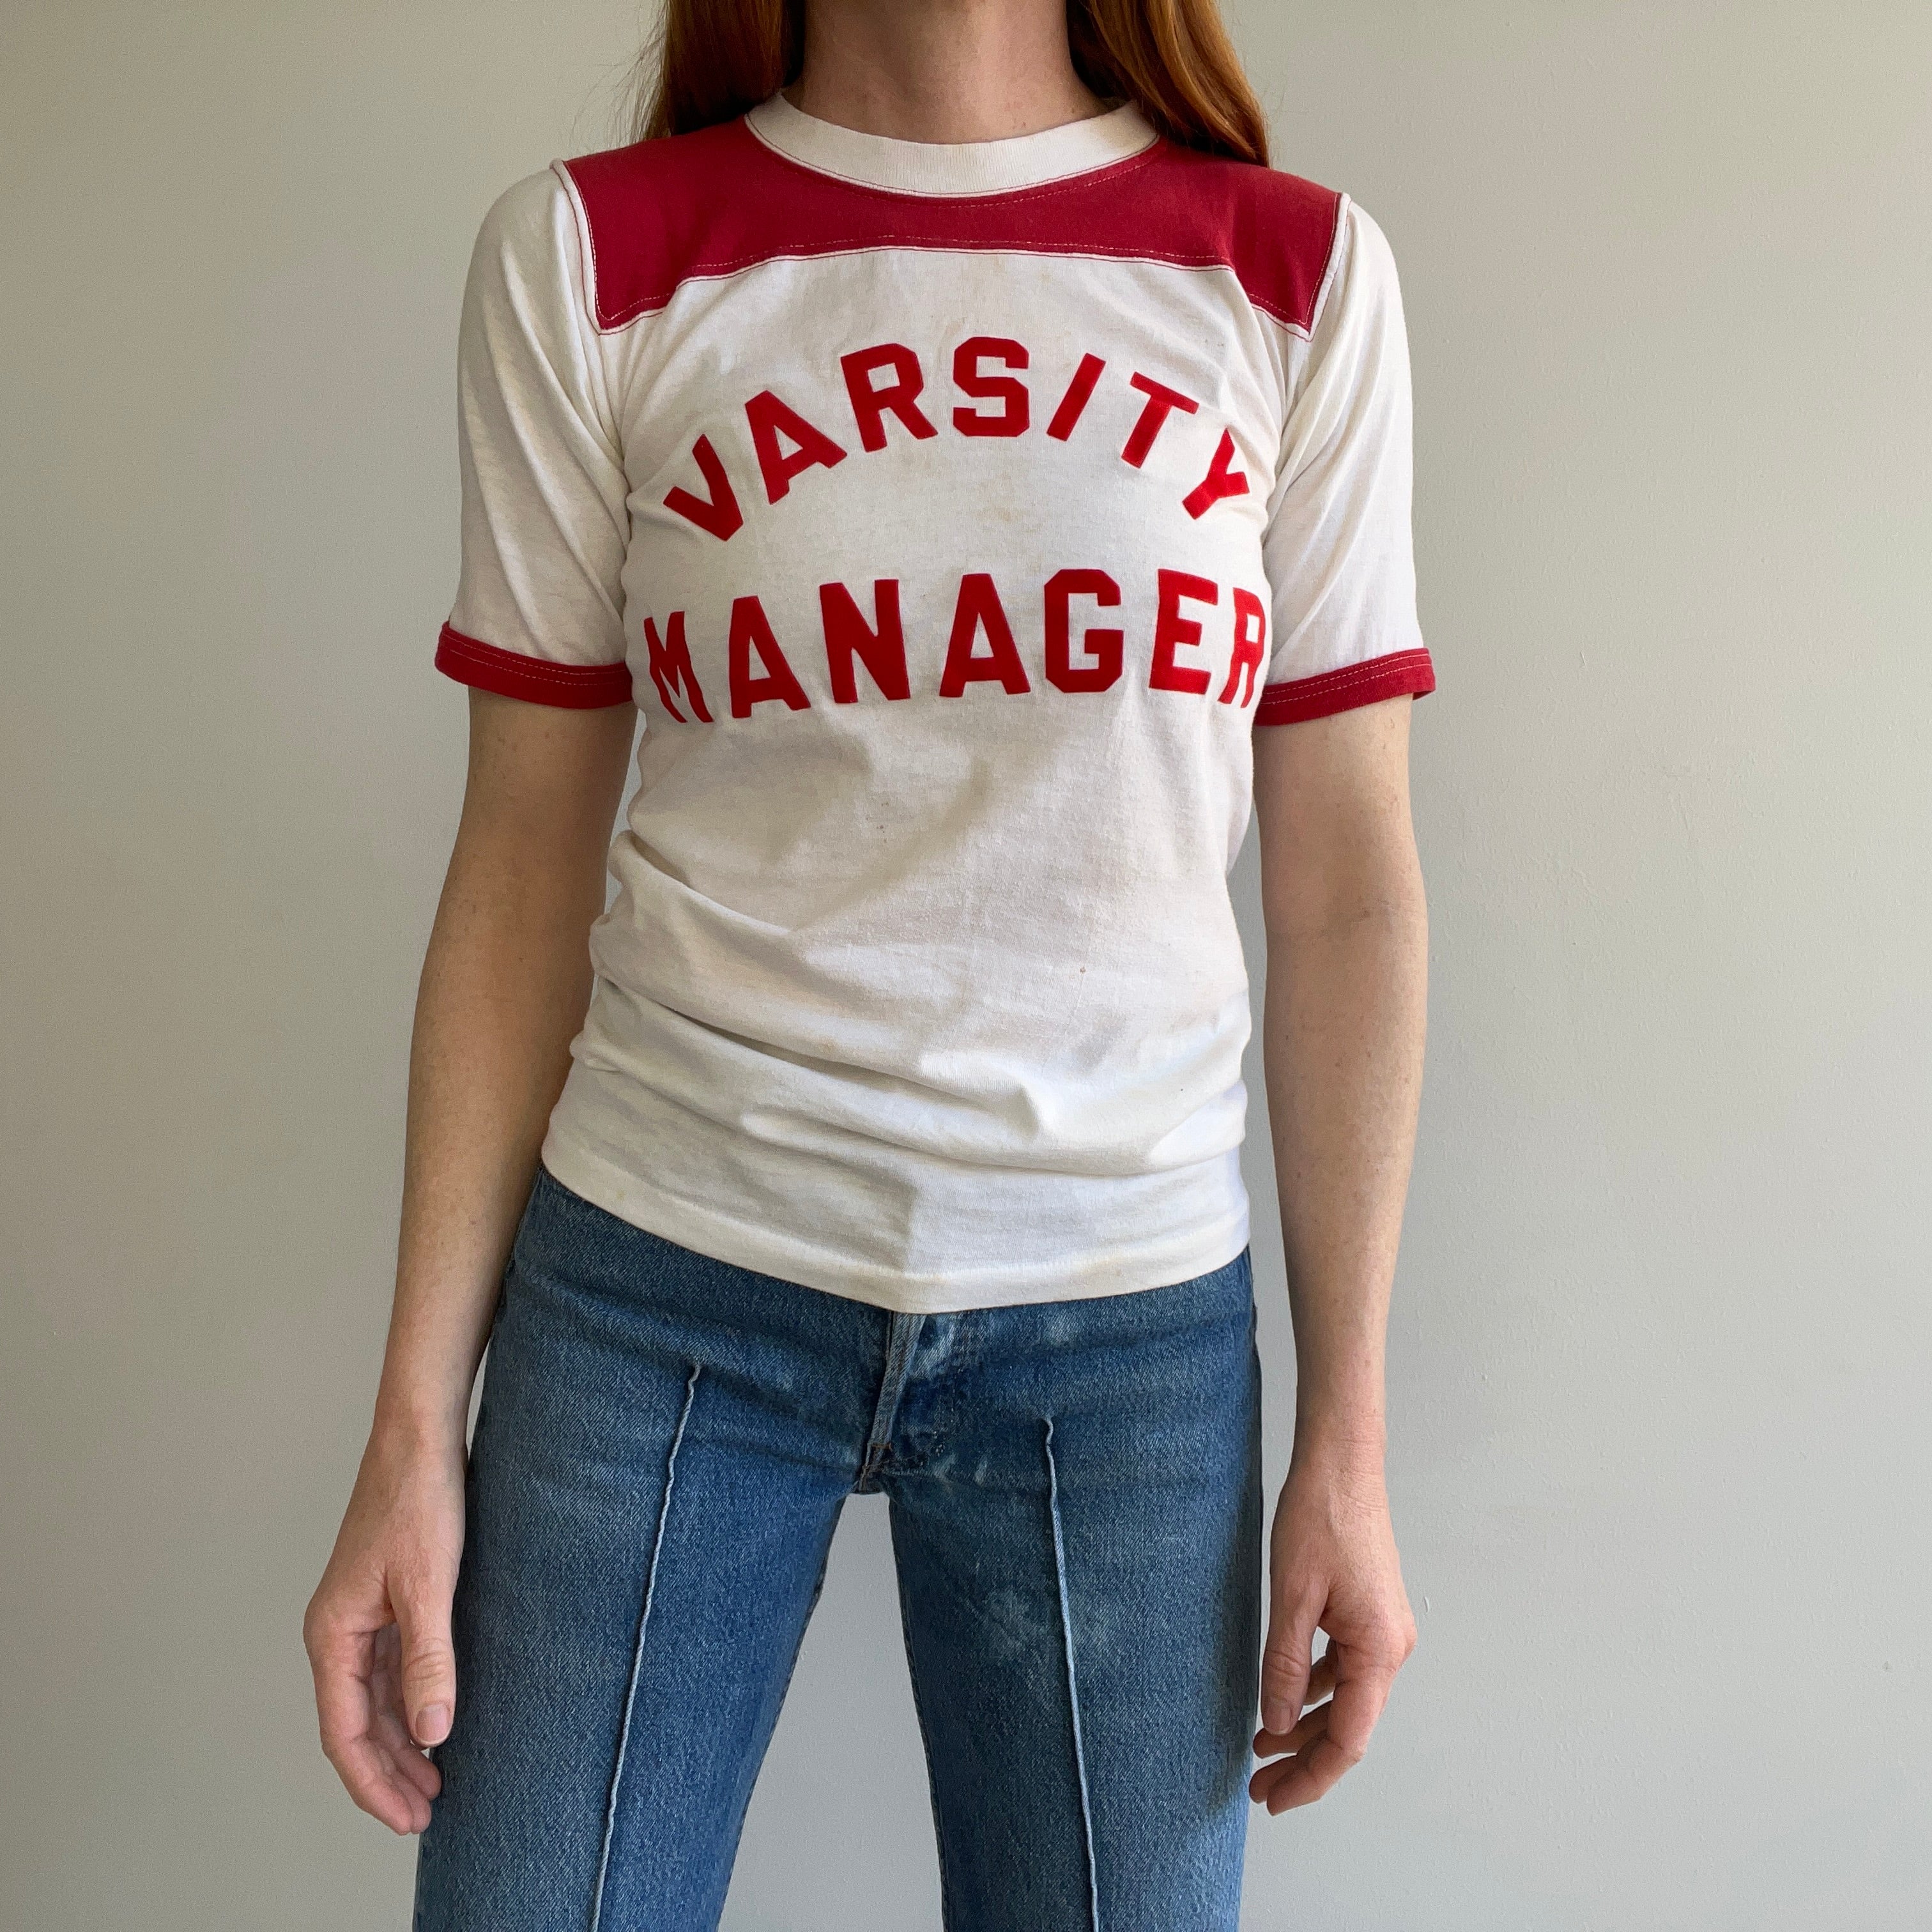 T-shirt de style football DIY Varsity Manager des années 1970 (Pam sur le dos)